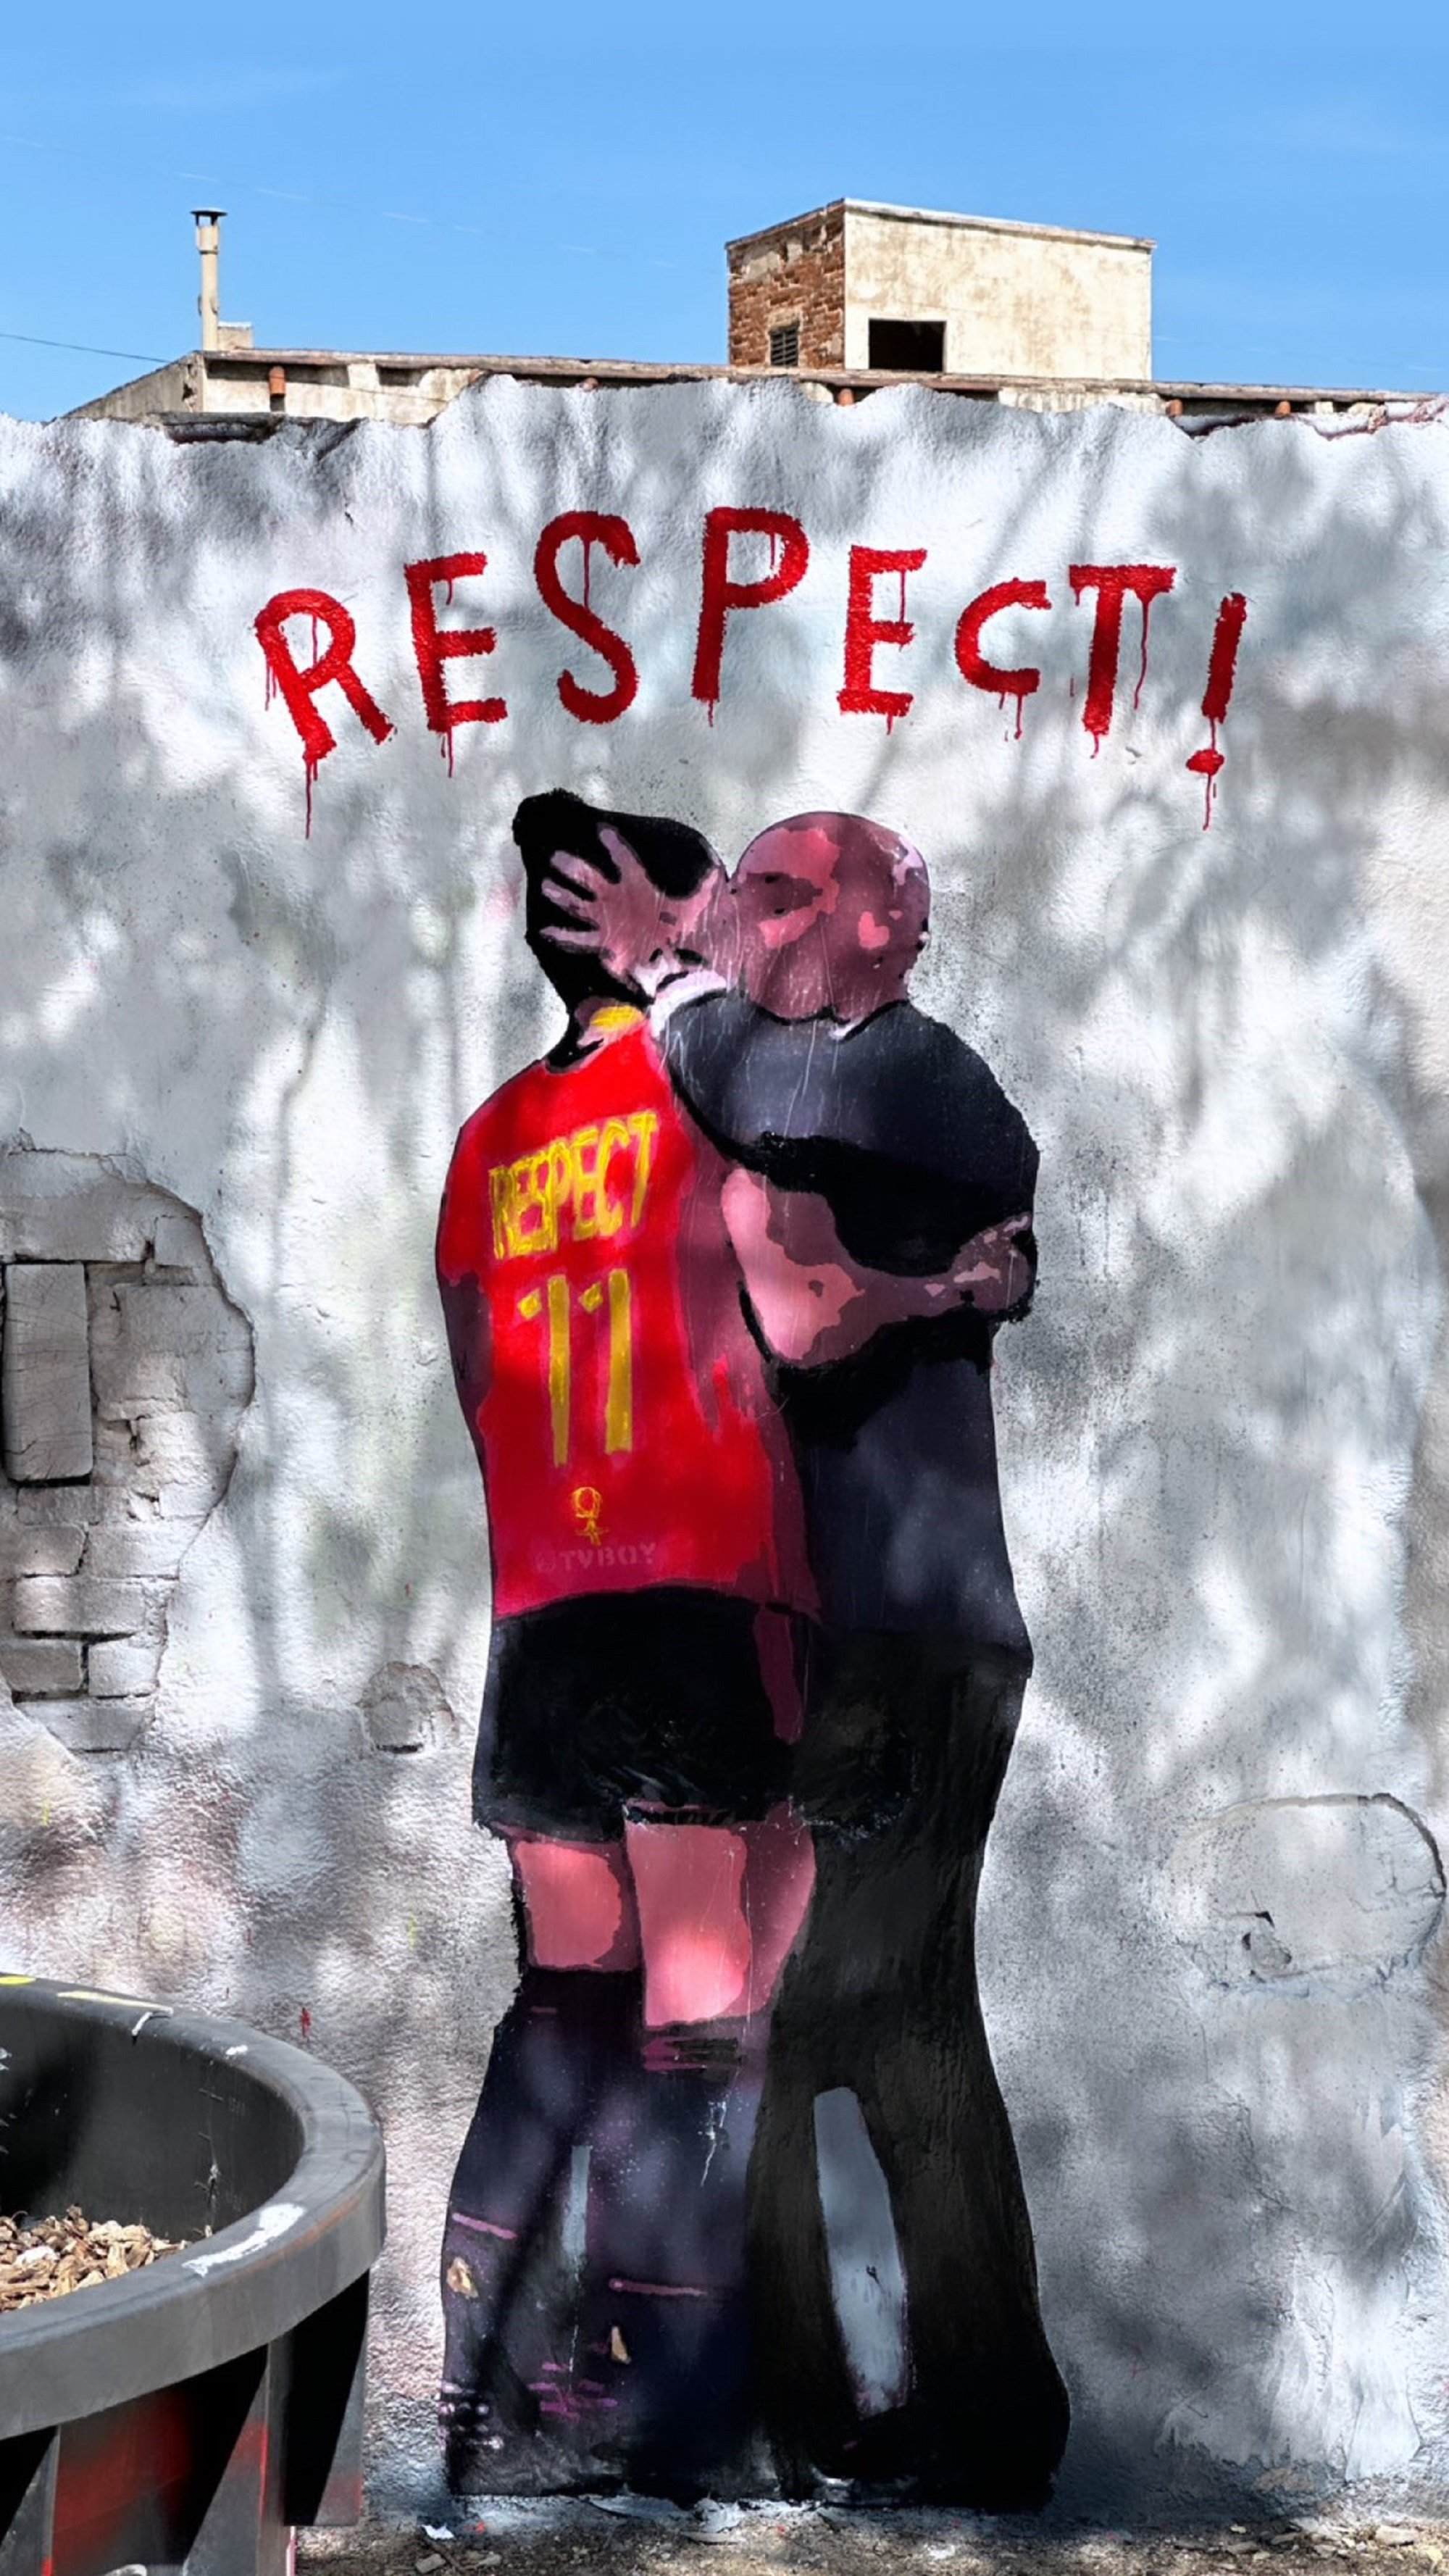 L'artista Tvboy pinta a Barcelona el petó no consentit de Rubiales: "Respect!"